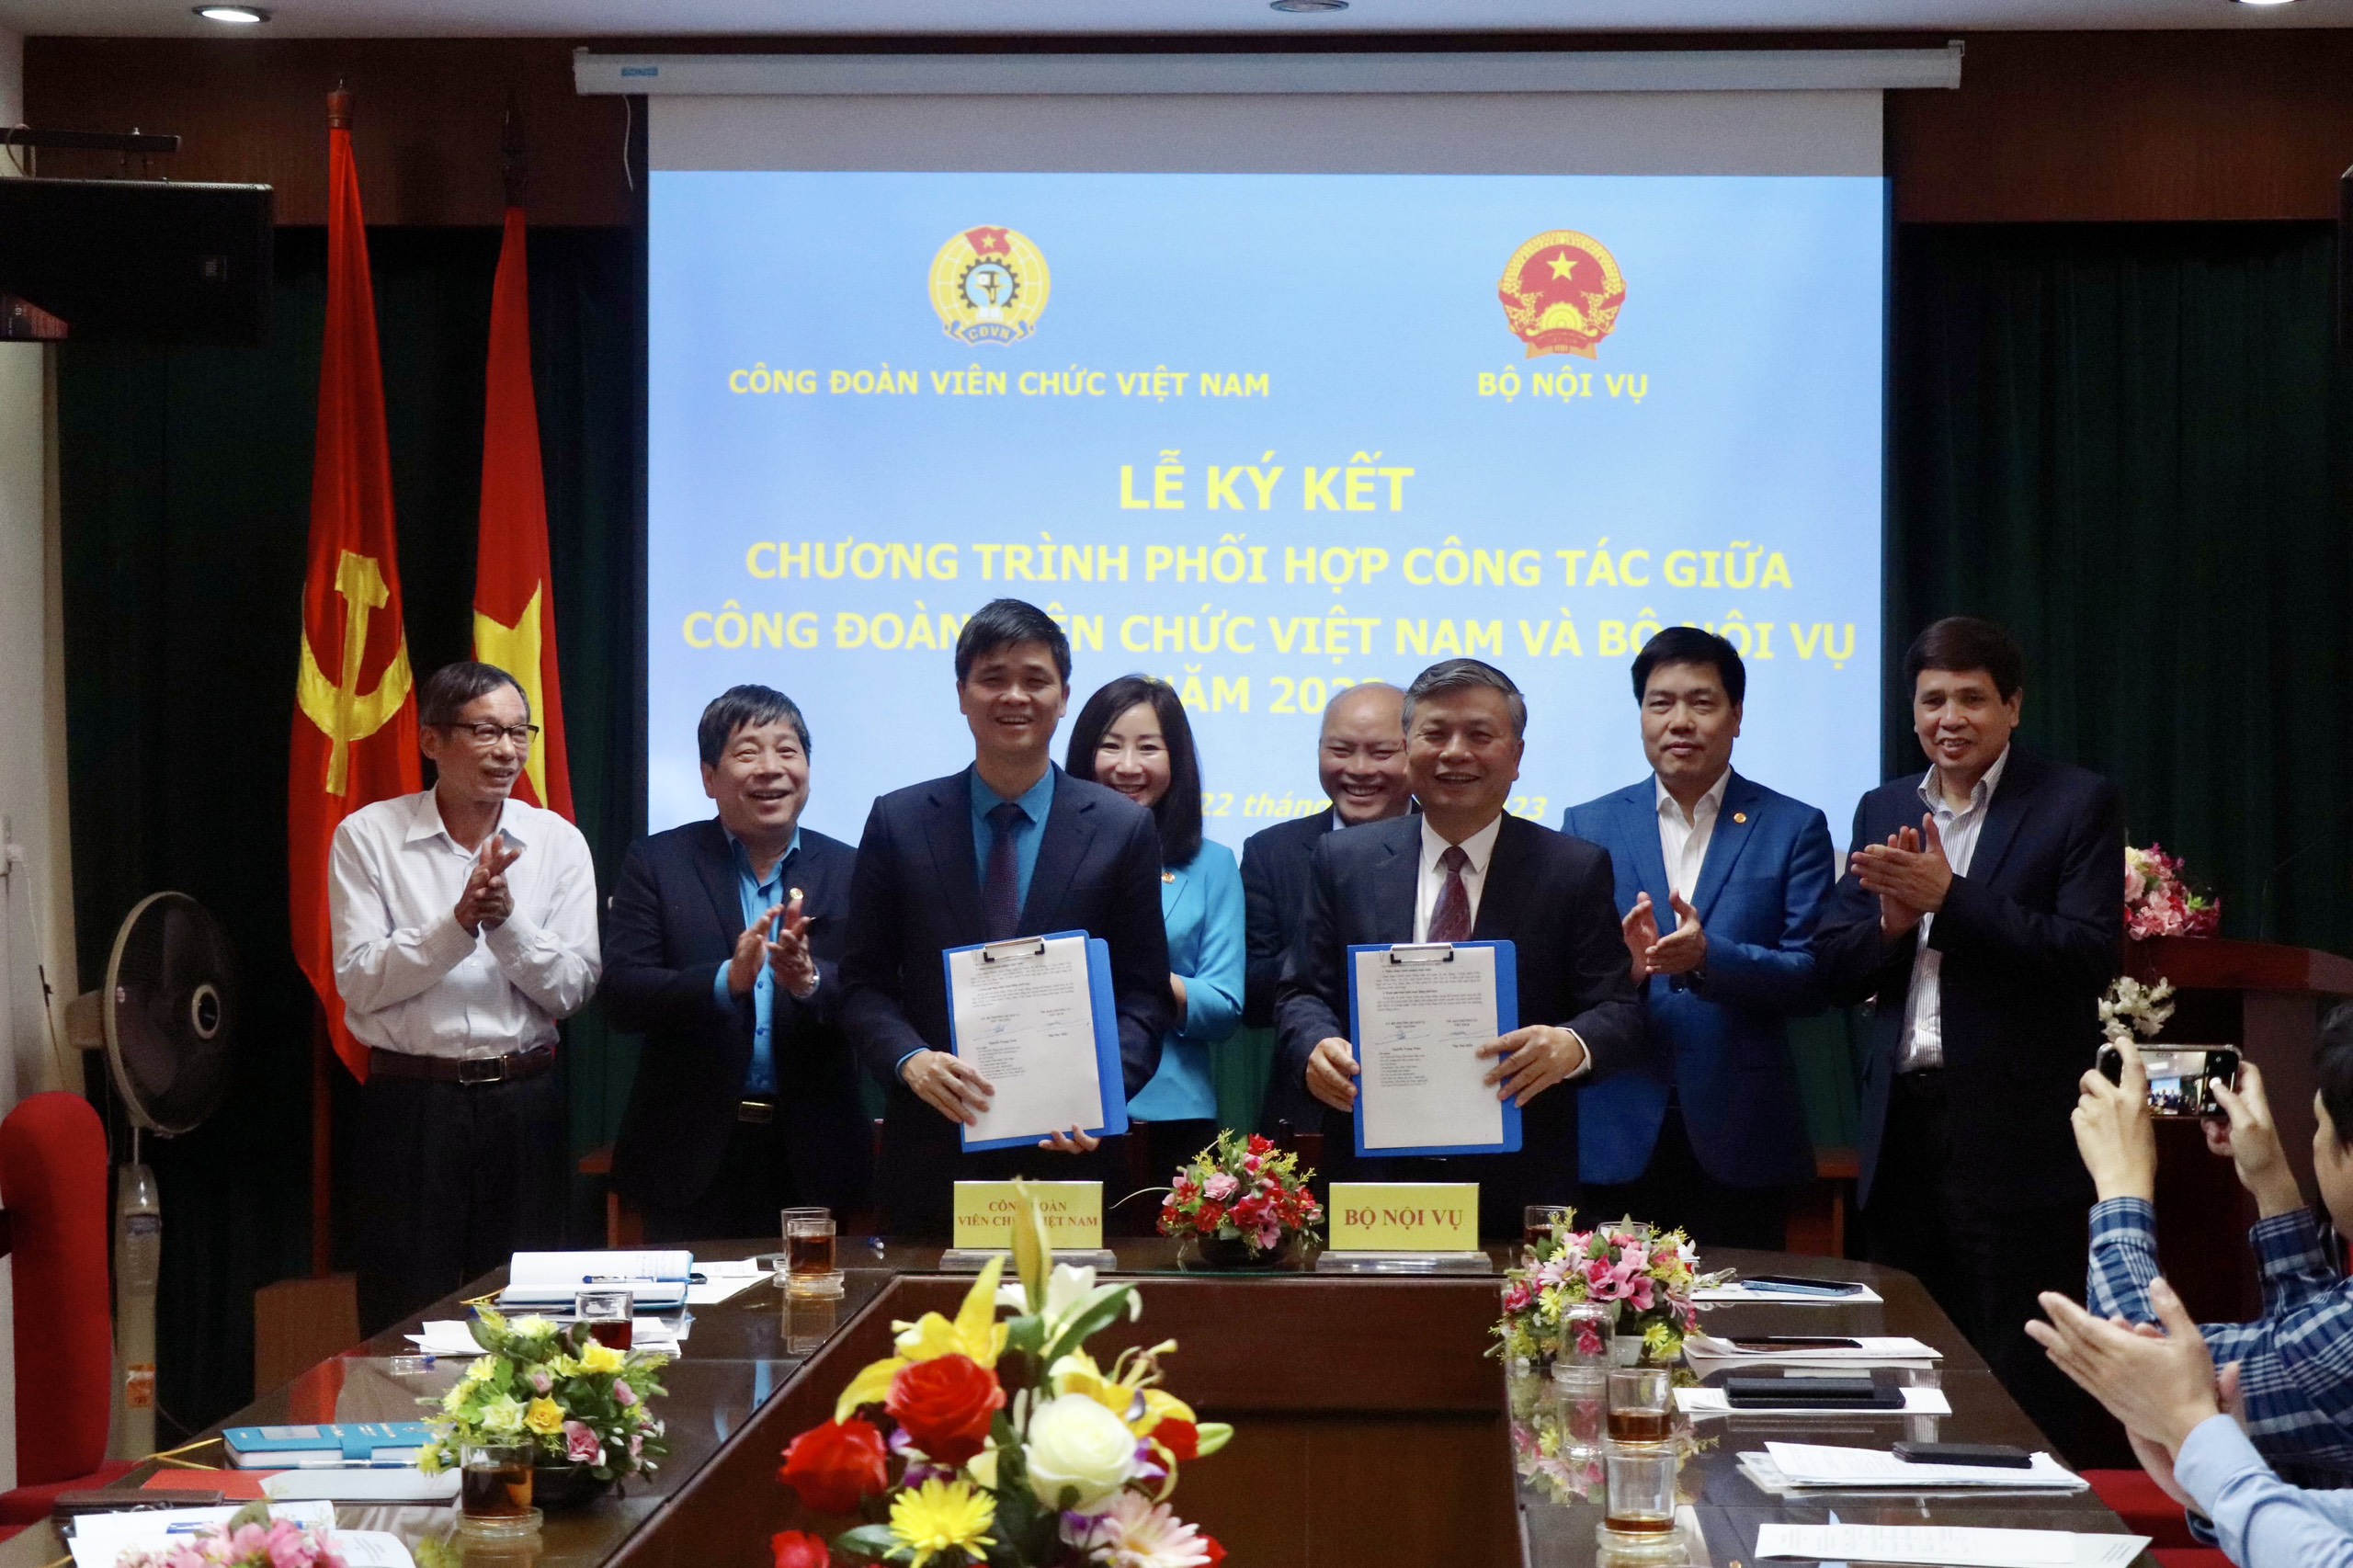 Công đoàn Viên chức Việt Nam và Bộ Nội vụ ký kết chương trình phối hợp năm 2023